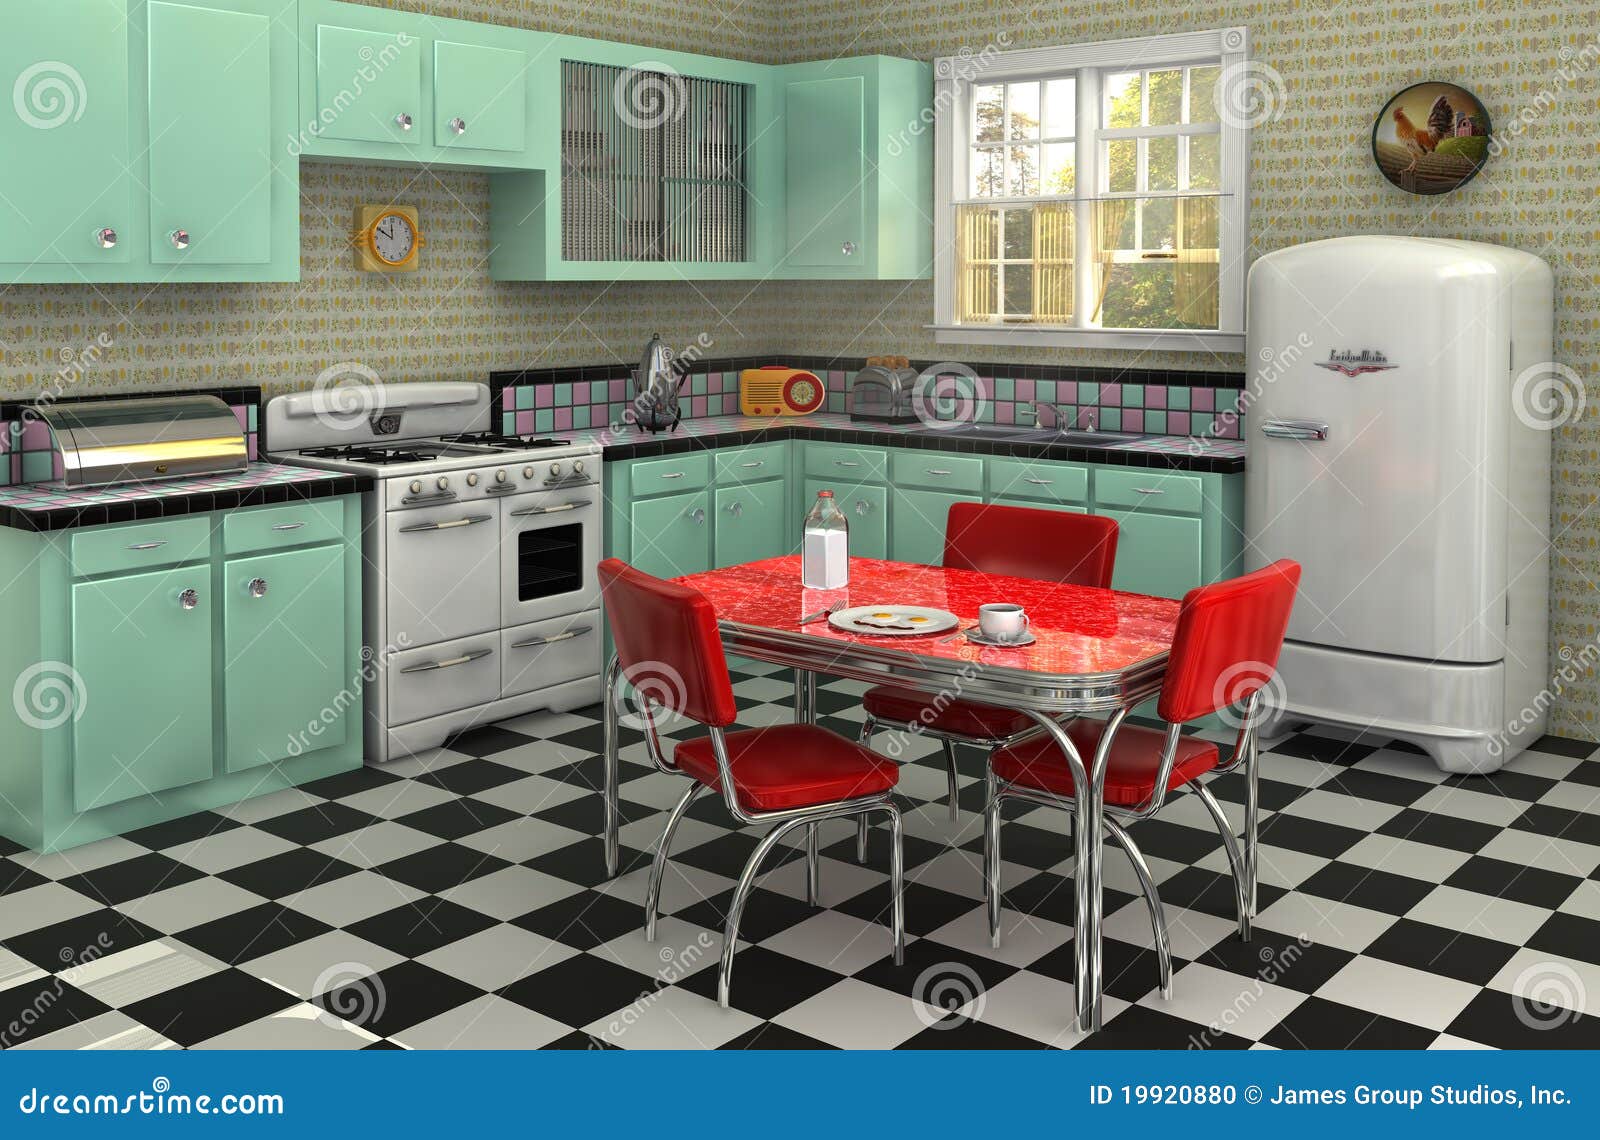 1950-s-kitchen-19920880.jpg